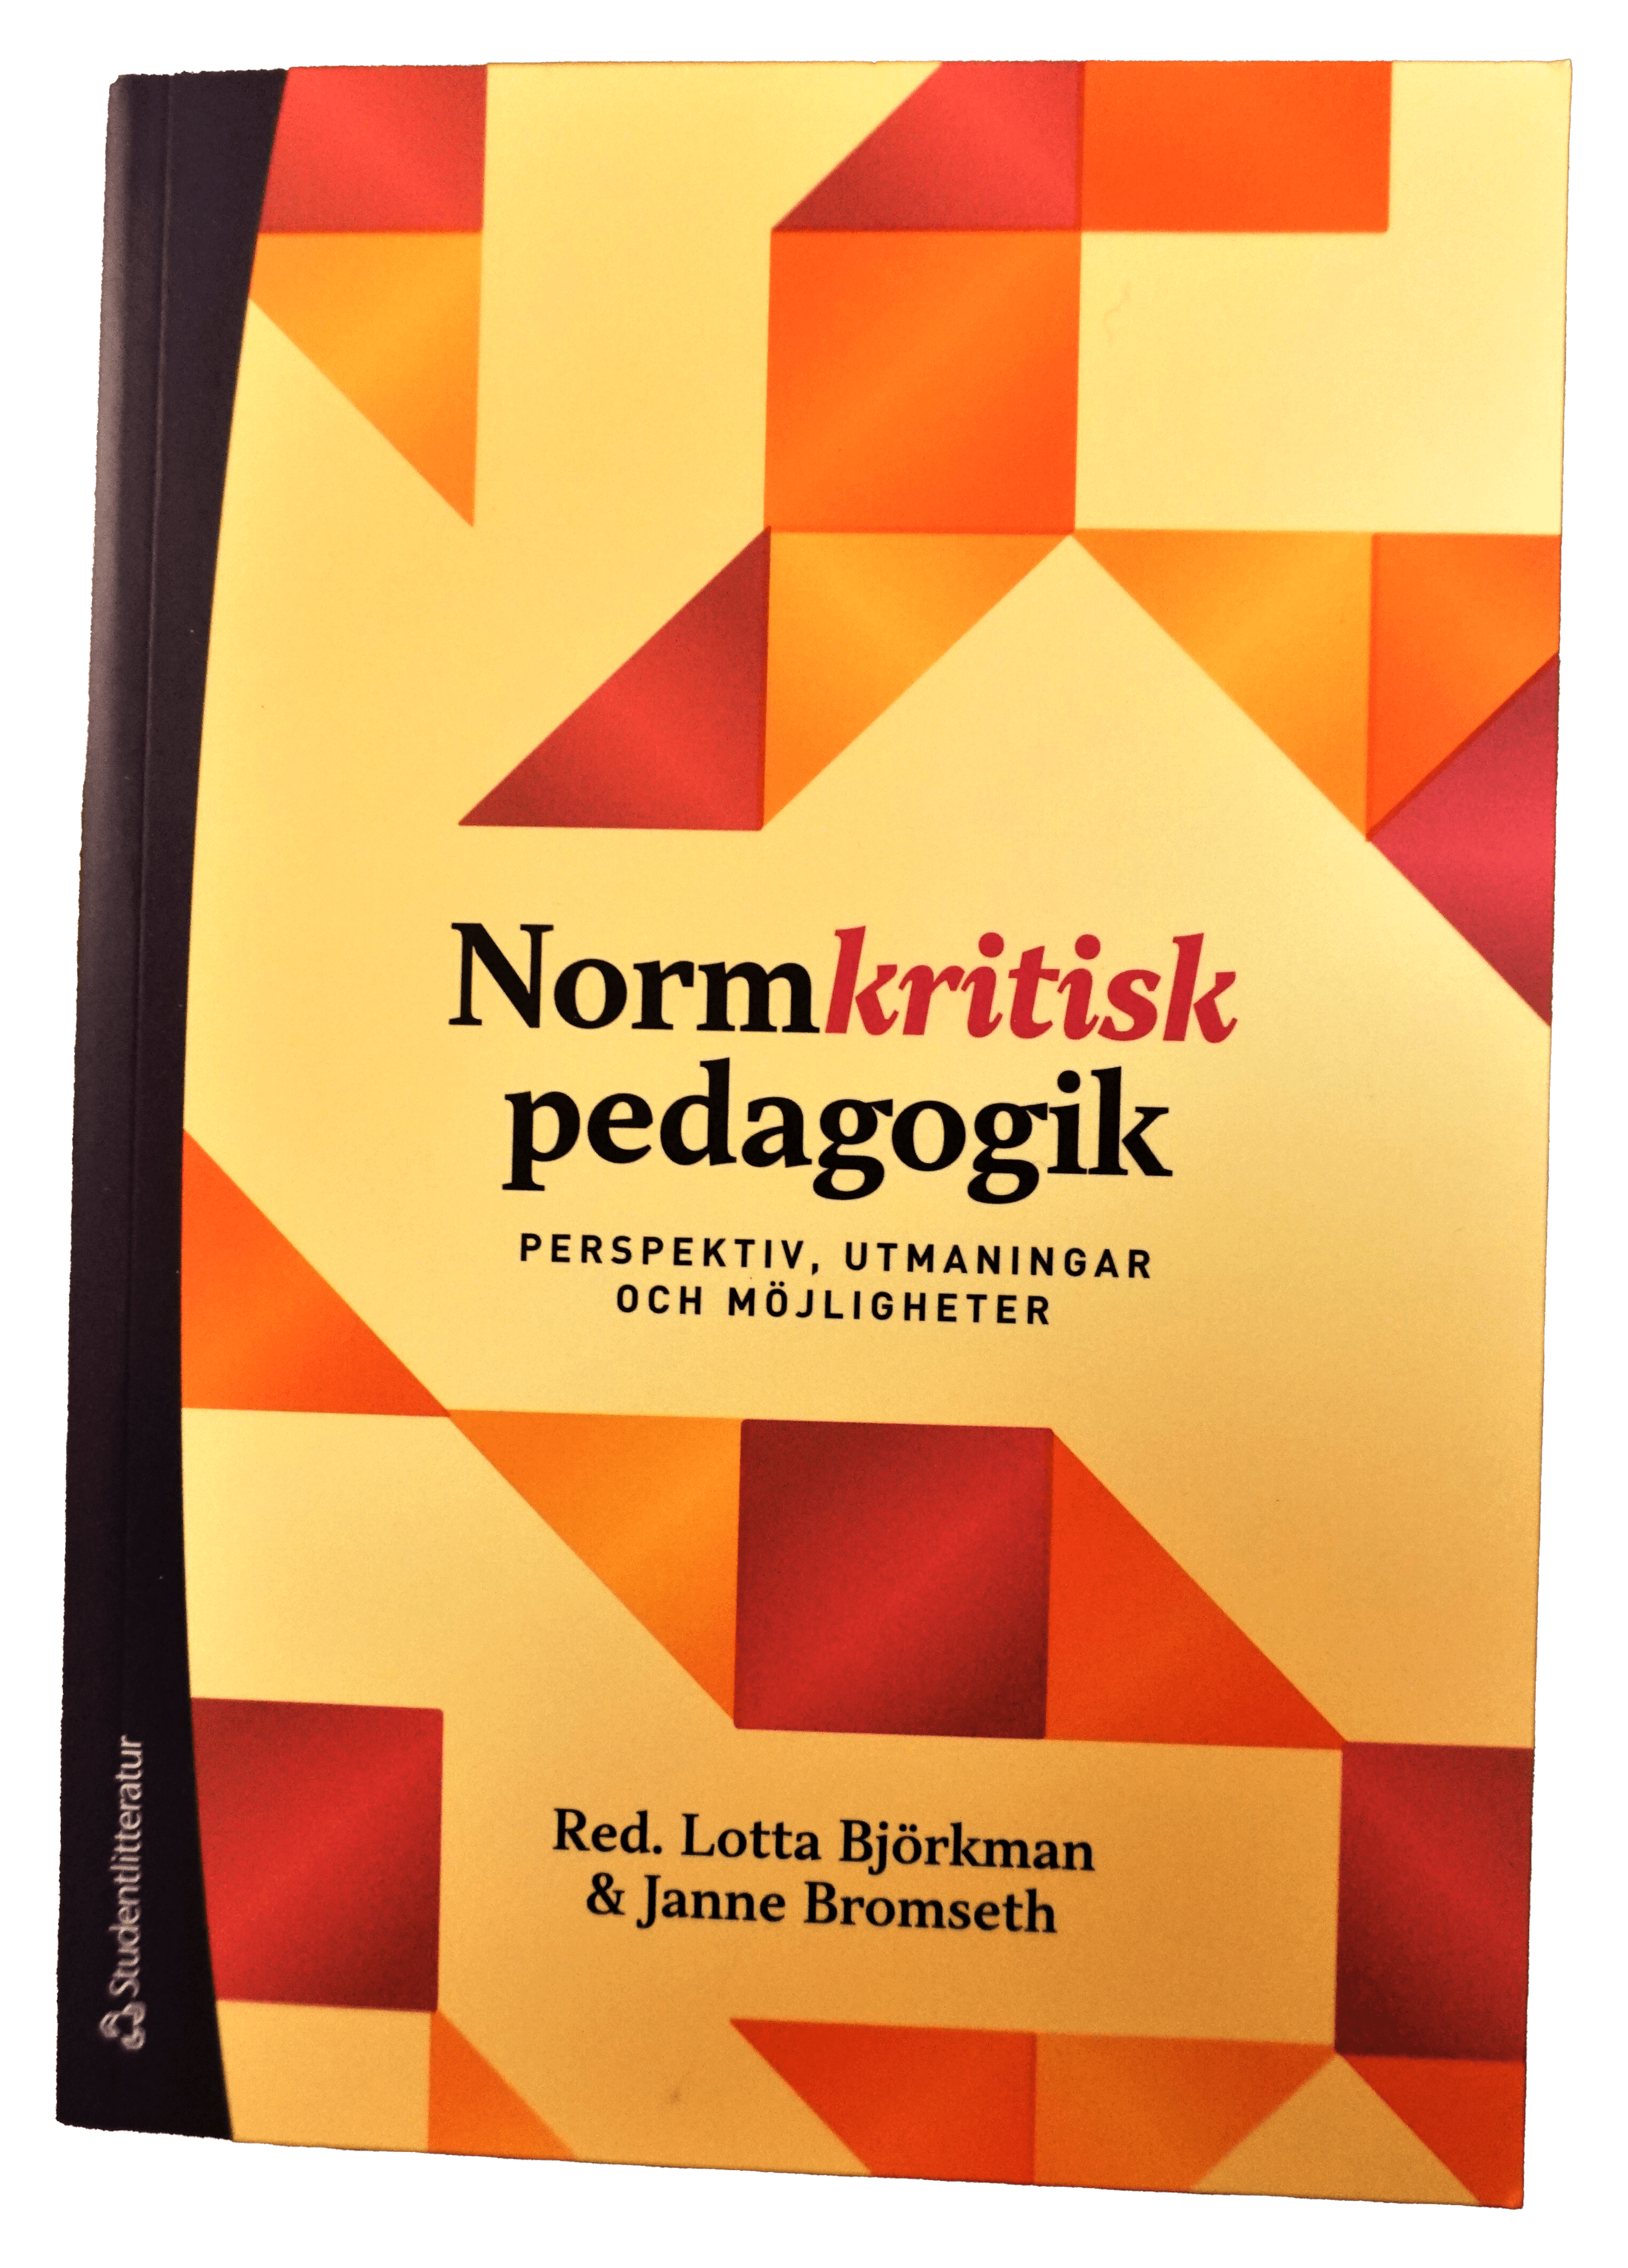 Normkritisk pedagogik. Perspektiv utmaningar och möjligheter, 2019. Redaktör och medförfattare Lotta Björkman